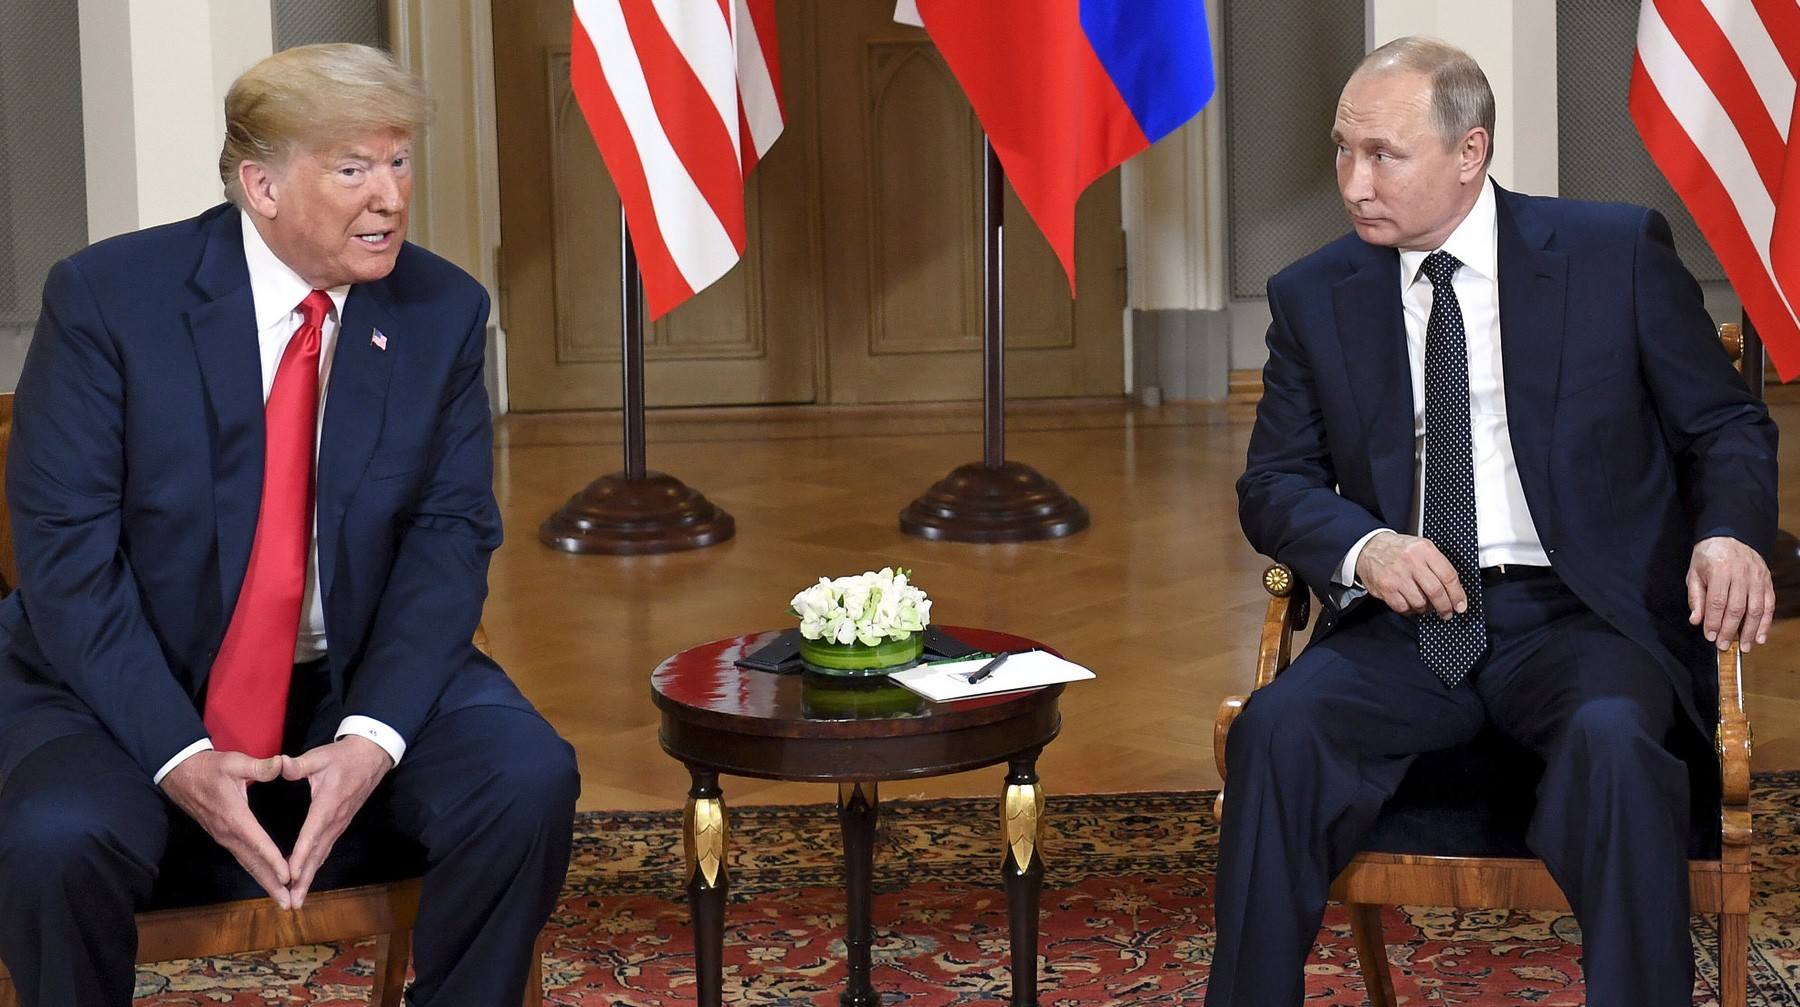 Dailystorm - Трамп: Мне нечего скрывать о встречах с Путиным